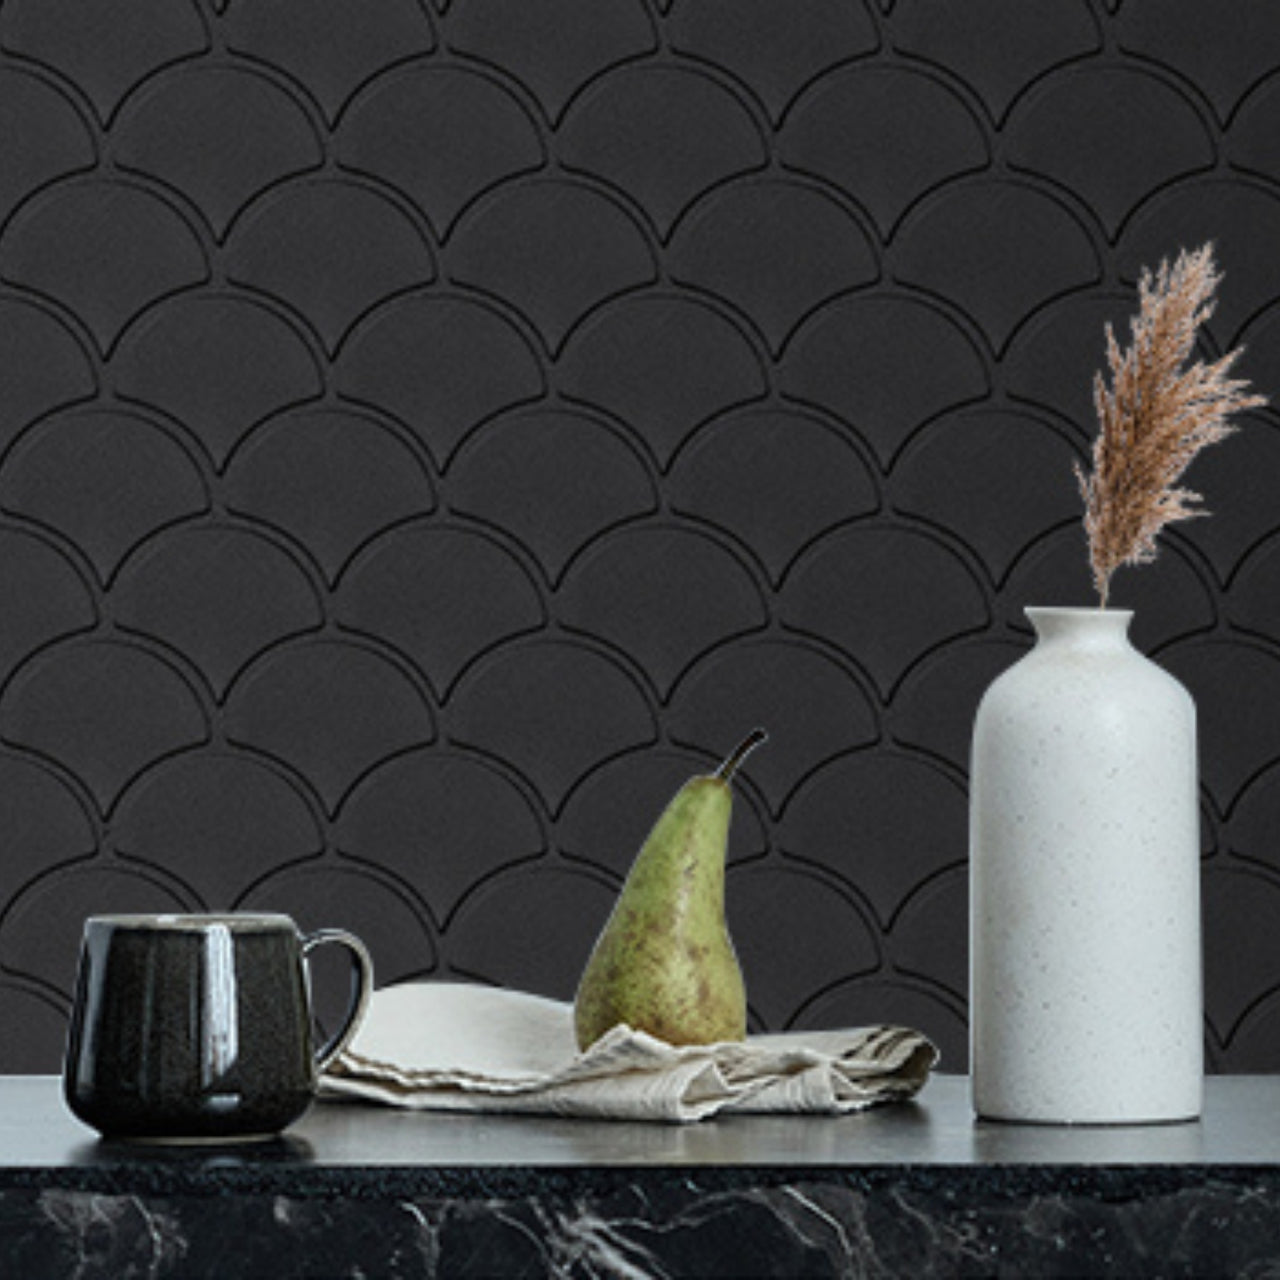 Oriental fan tiles in black with black grout as a kitchen backsplash